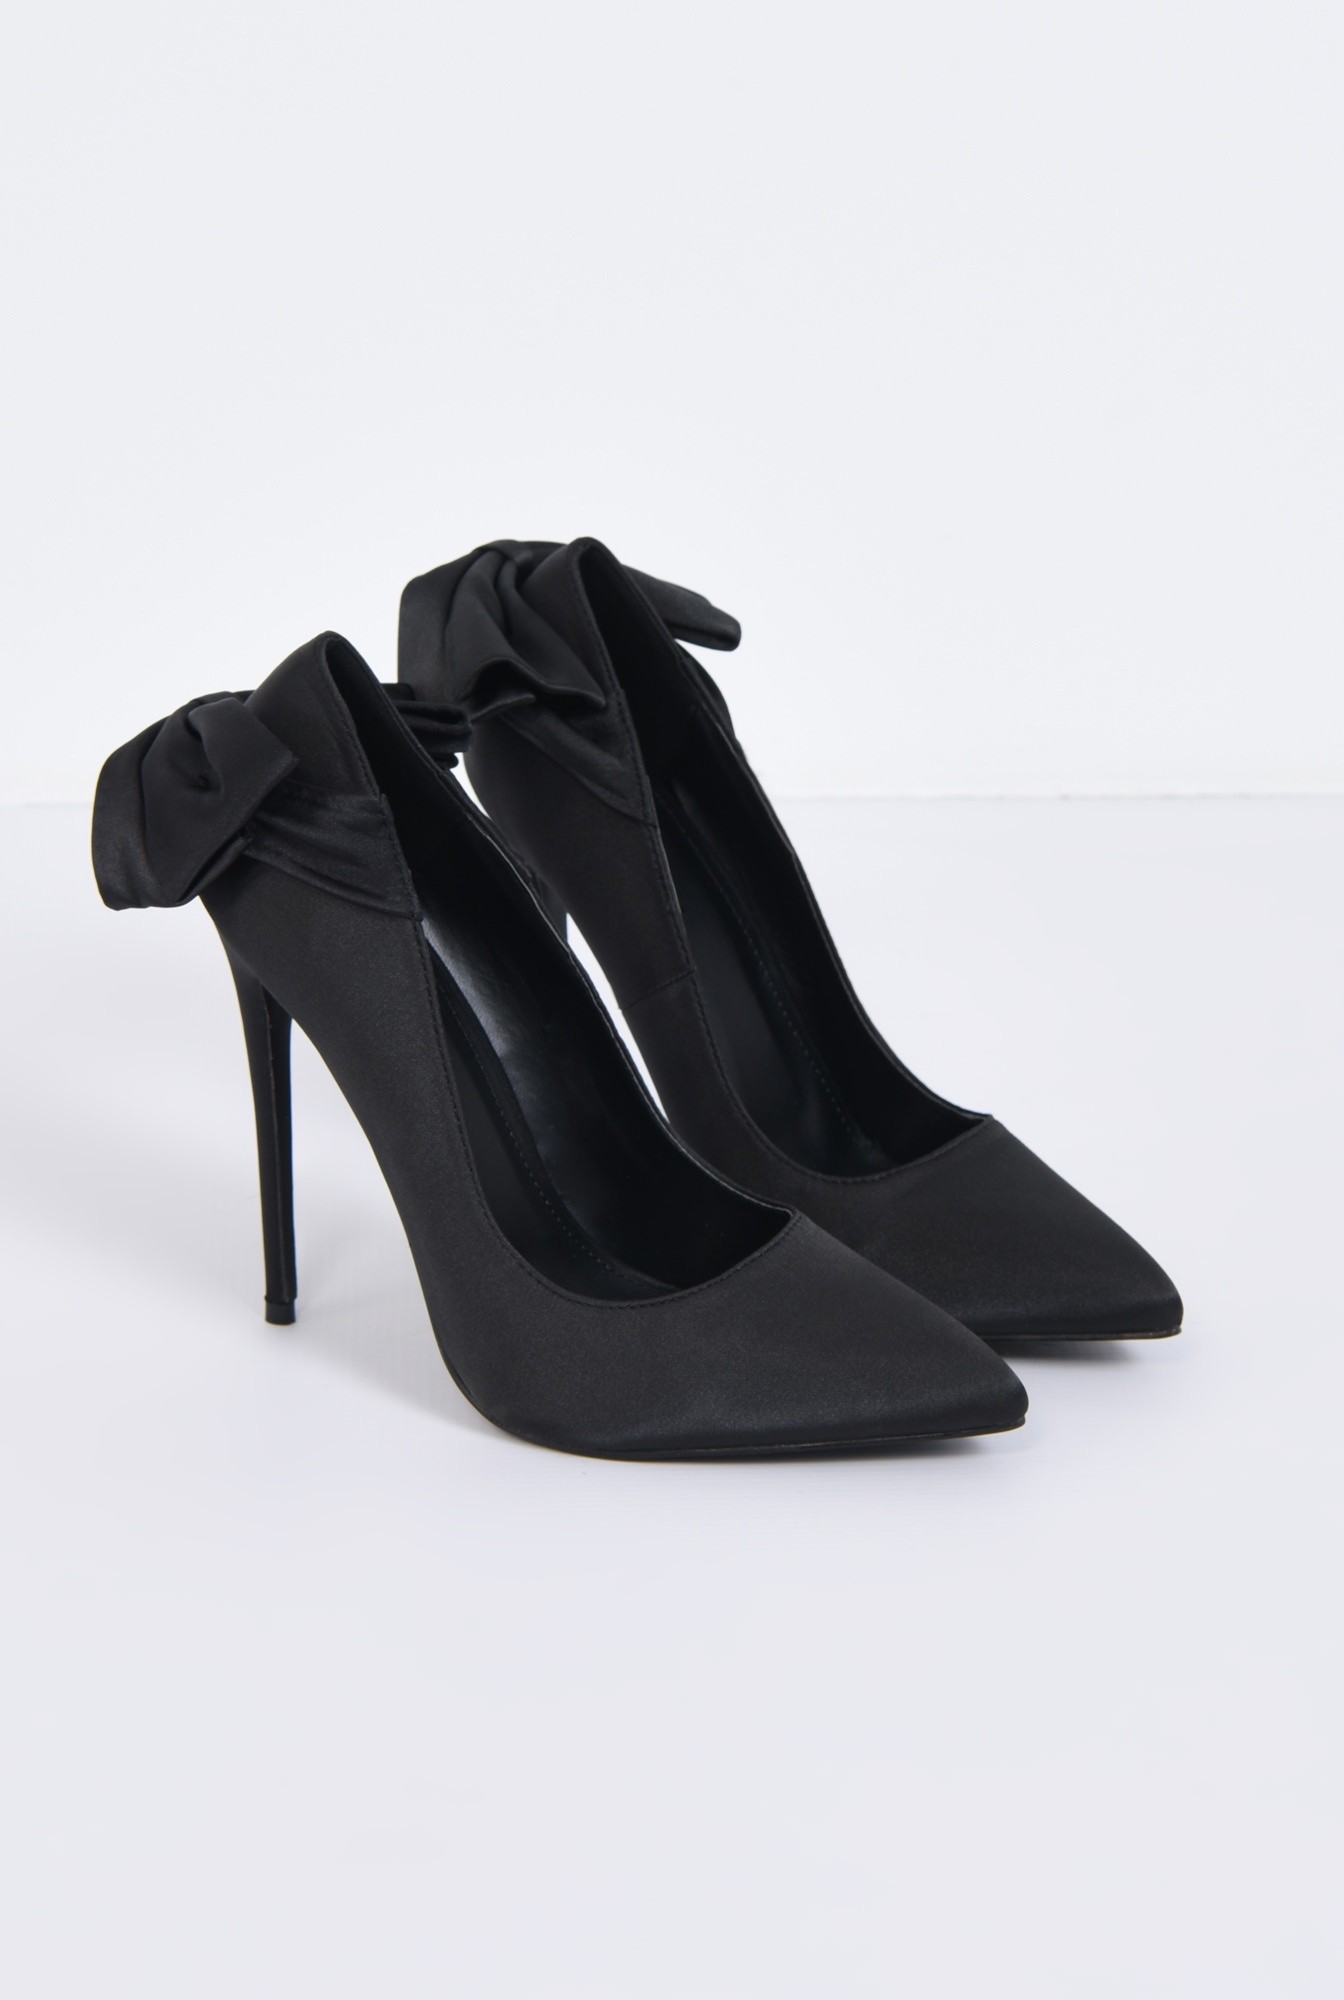 1 - pantofi eleganti, negru, satin, stiletto